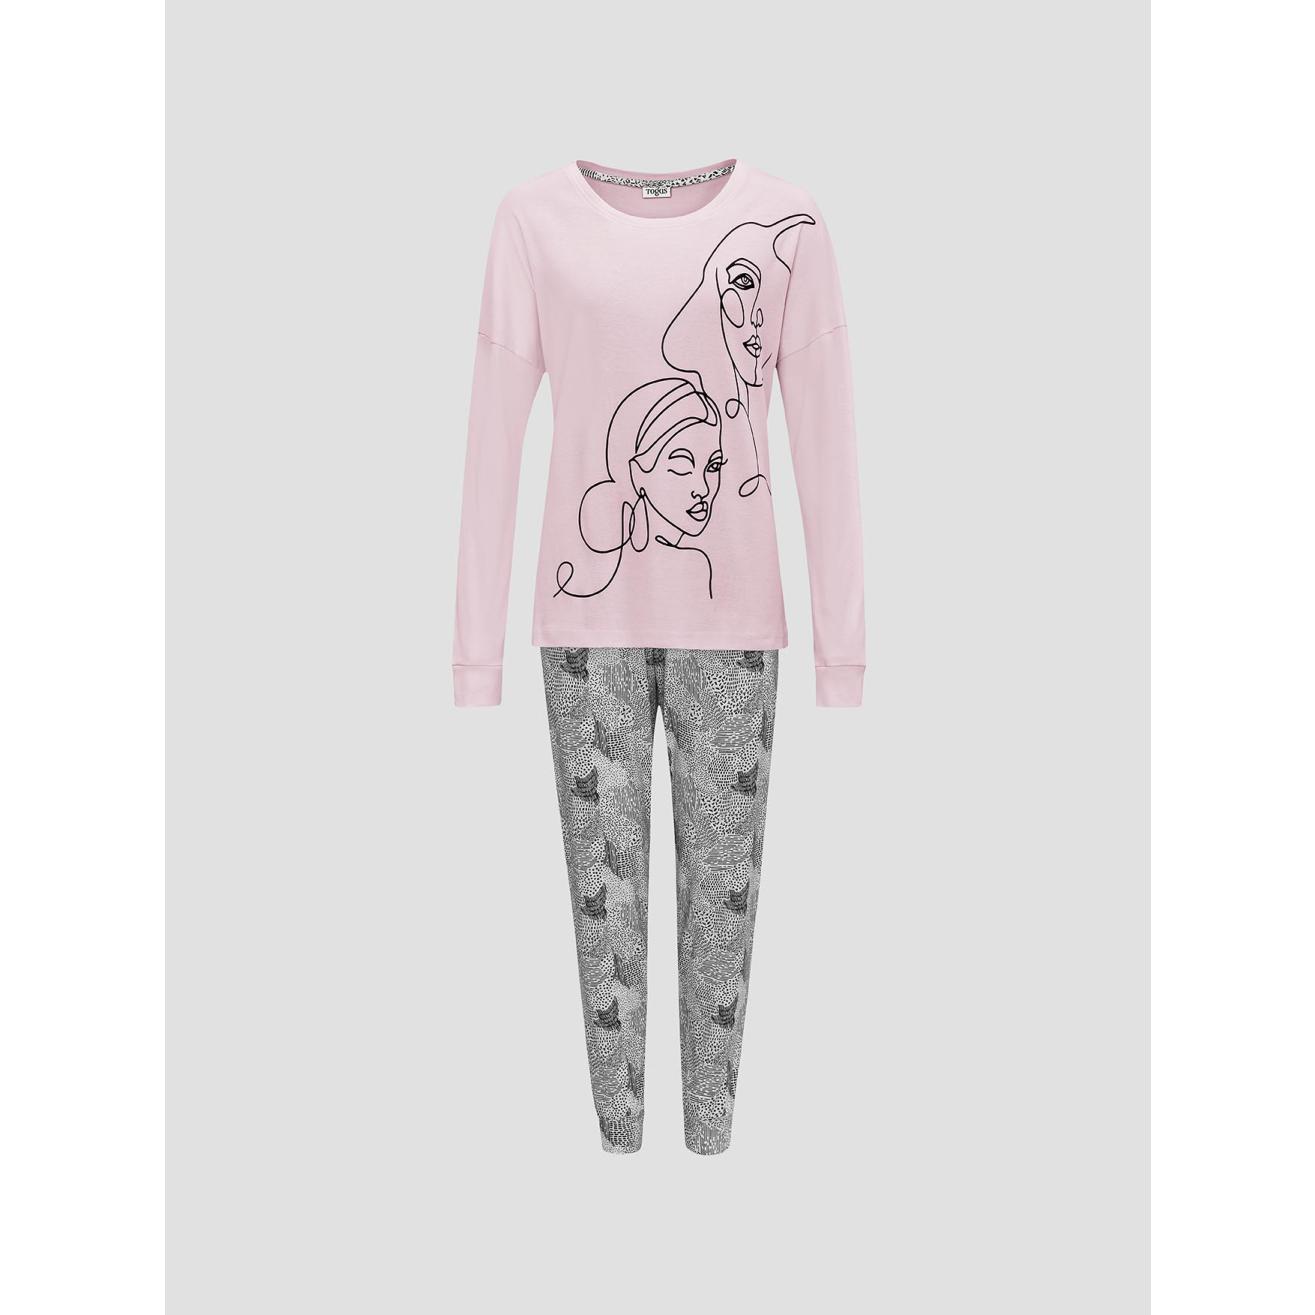 Пижама для девочек Togas Teens Кэрри розово-серая 164 см жен пижама дороти синий р 48